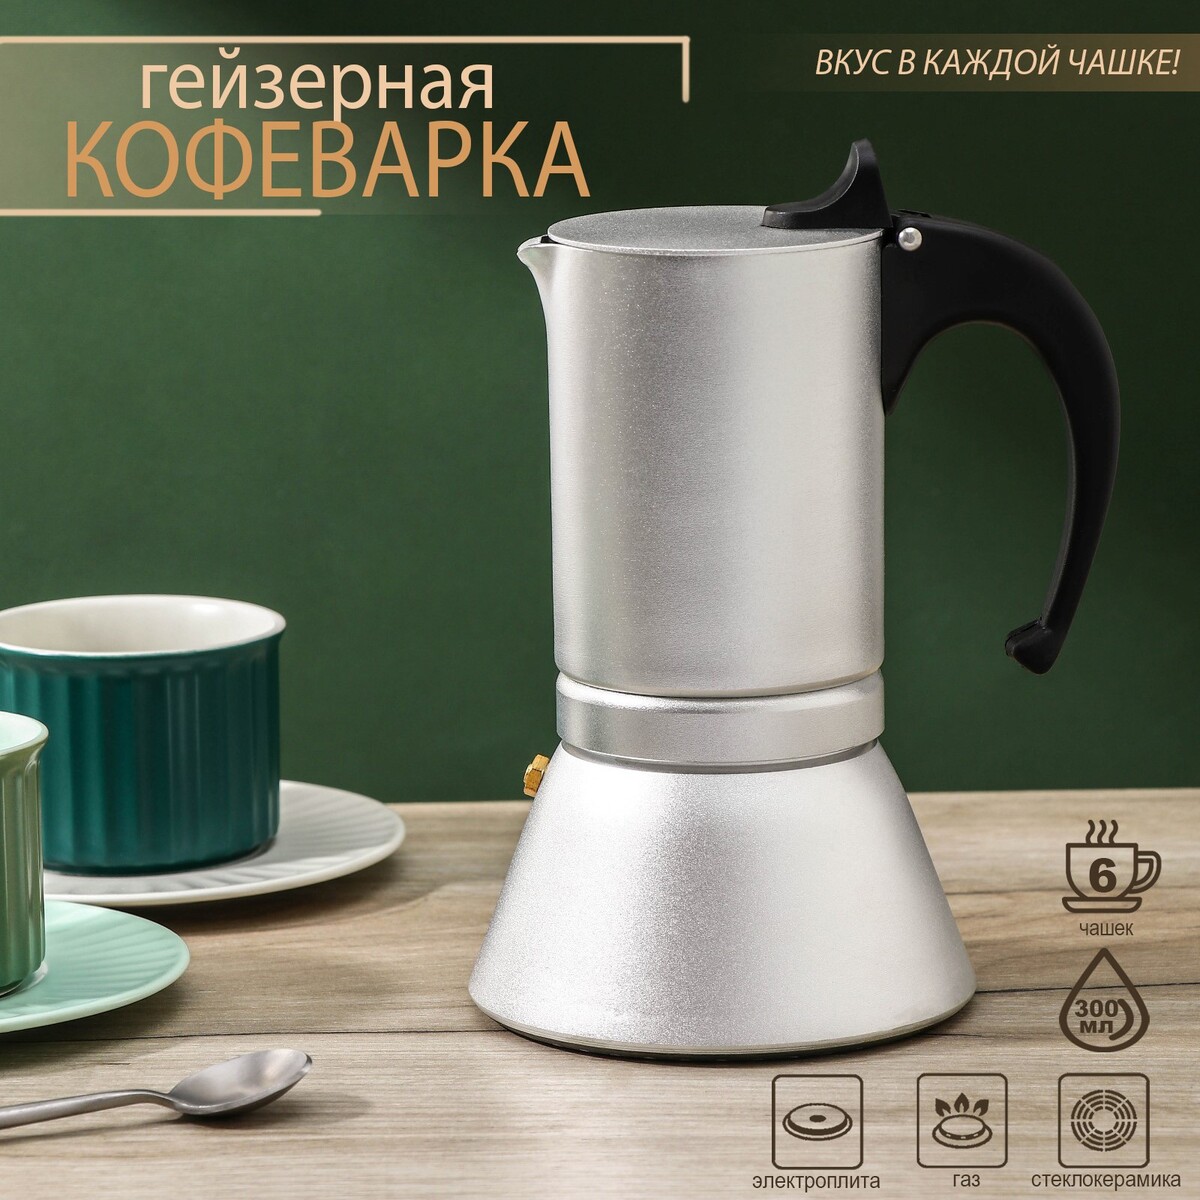 Кофеварка гейзерная magistro salem, на 6 чашек, 300 мл, индукция кофеварка гейзерная 330 мл vinzer latte nero 6 чашек